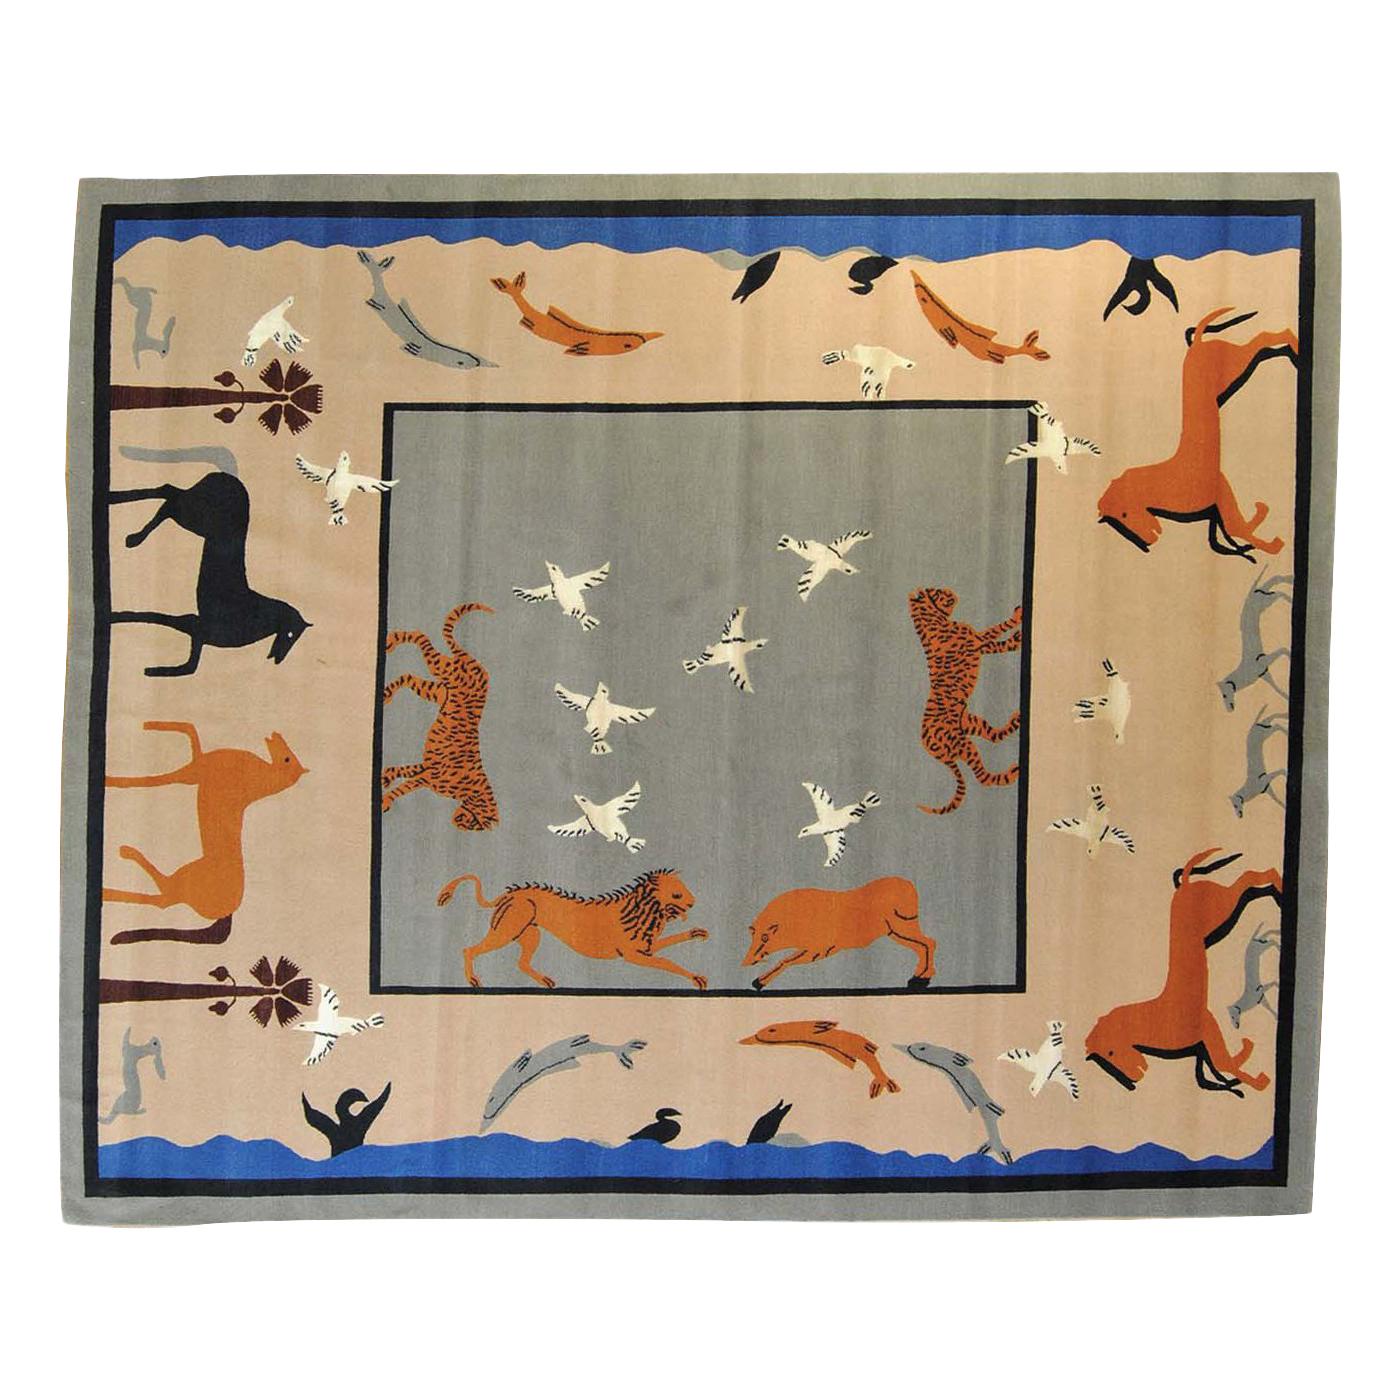 Dalle Gioie Degli Etruschi Rug by Linde Burkhardt For Sale